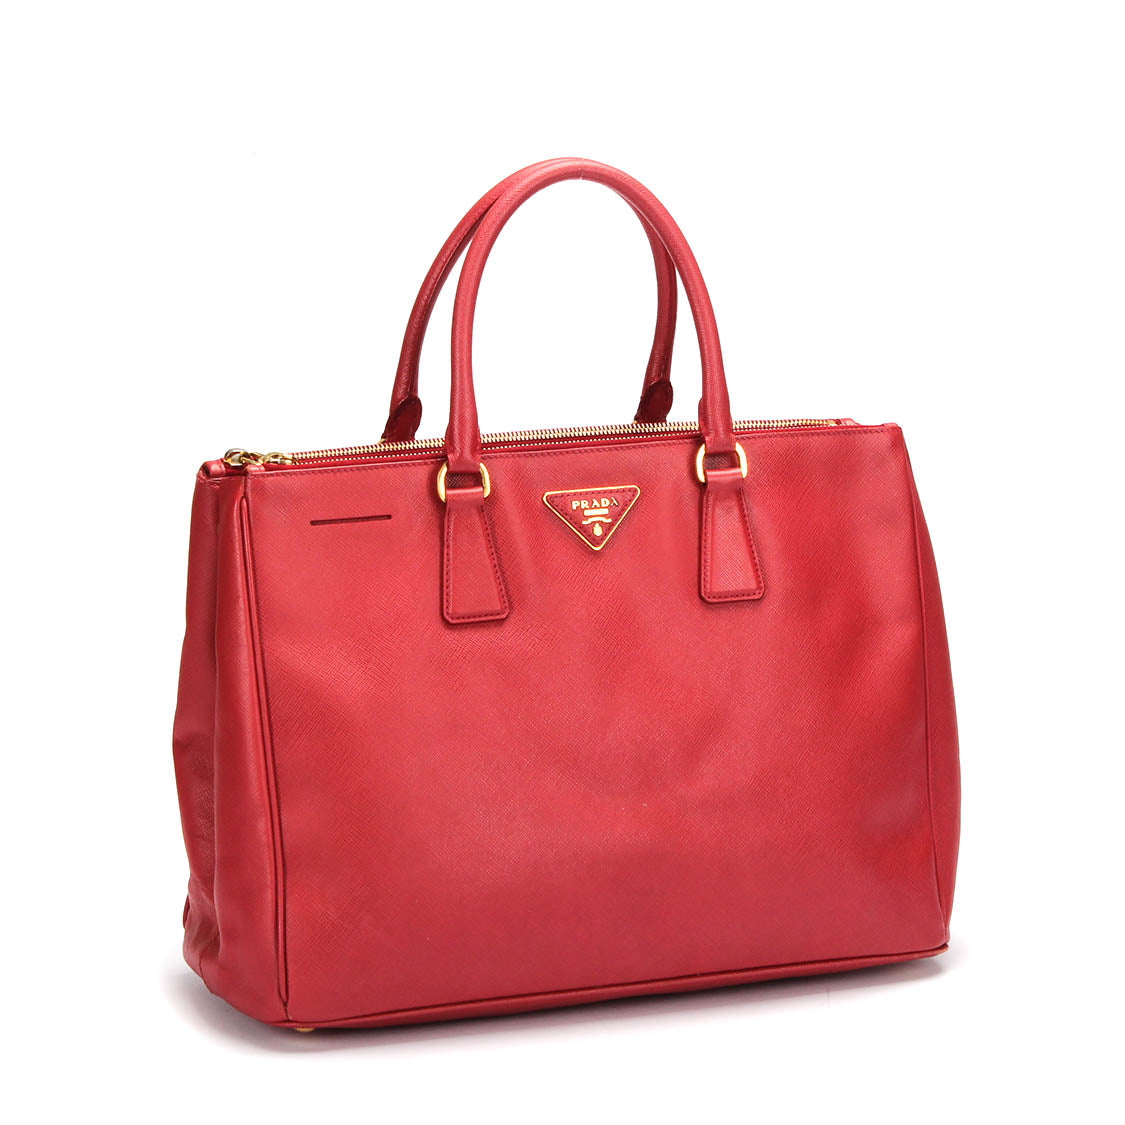 Prada Saffiano Galleria Leather Tote Bag in Good condition